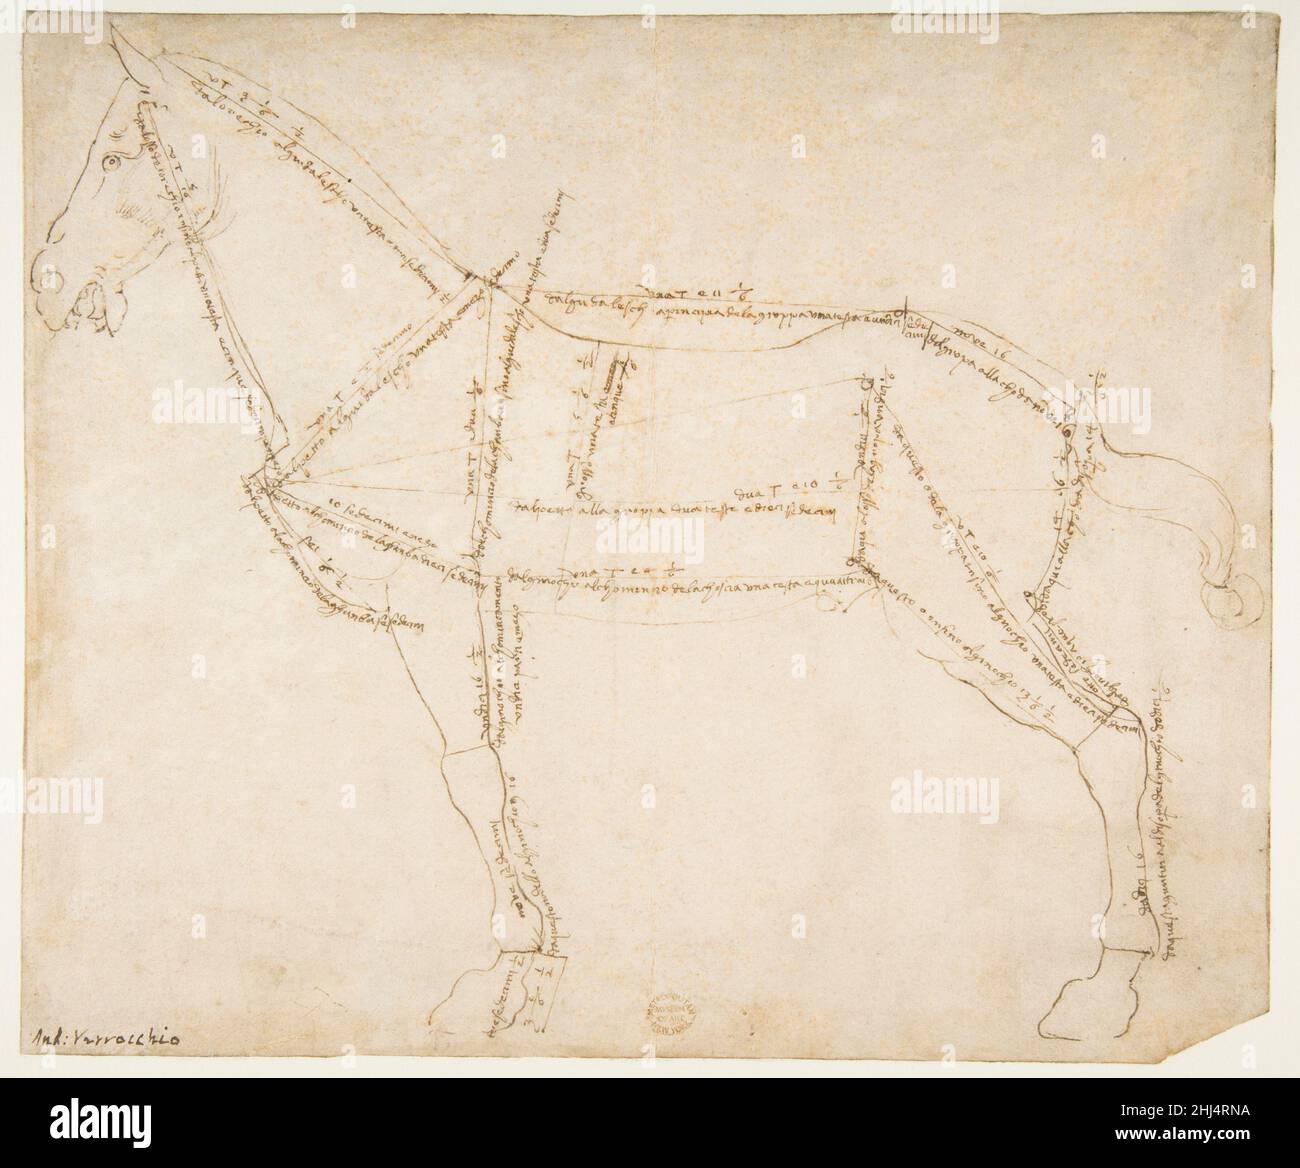 Dessin mesuré d'un cheval orienté vers la gauche (recto) env.1480–88 Andrea del Verrocchio Italien ce dessin est un exemple remarquable de la préoccupation de la Renaissance avec des proportions idéales, comme le montre l'Homme de Vitruvian de Leonardo da Vinci, l'élève le plus célèbre de Verrocchio.Verrocchio a commencé ce dessin en faisant un contour semi-stylisé du sujet.Il a ensuite schématisé le corps en le divisant et en l'incluant avec des mesures détaillées.La précision des mesures soutient l'idée que cette étude était liée à la statue équestre en bronze de Bartolomeo Colleoni, une commission VE Banque D'Images